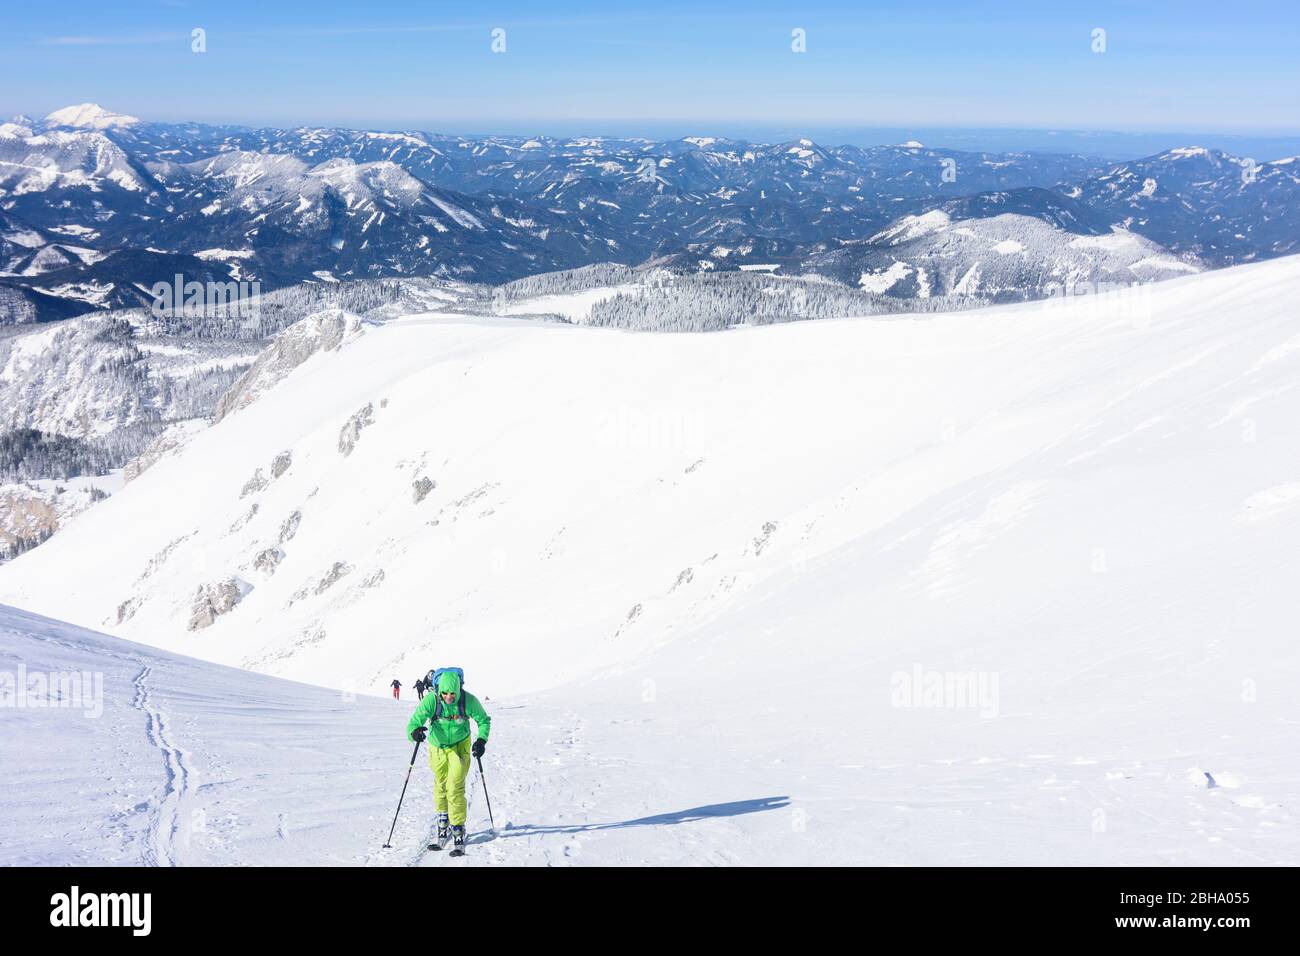 Puchberg am Schneeberg: mountain Schneeberg, ski tour tourer, view to mountain Ötscher in Vienna Alps, Alps, Lower Austria, Lower Austria, Austria Stock Photo